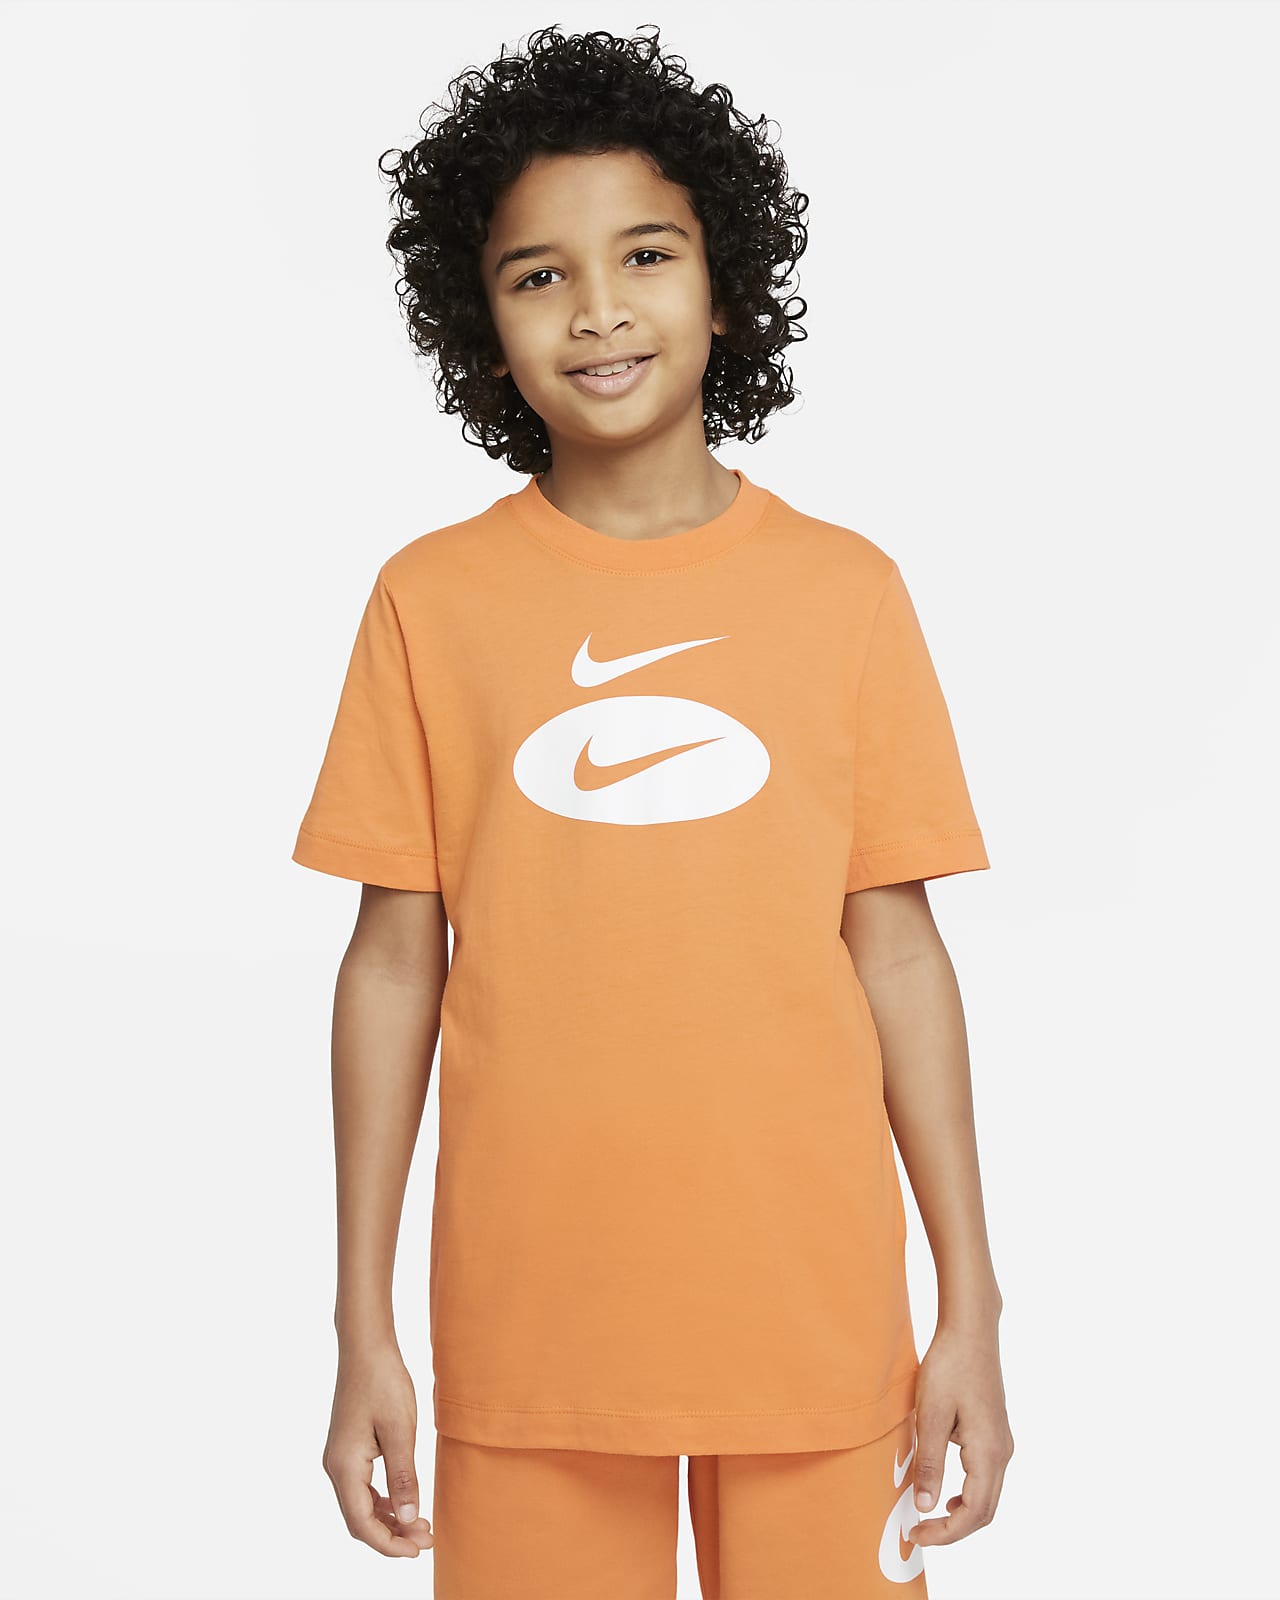 Playera para niños grandes Nike Sportswear